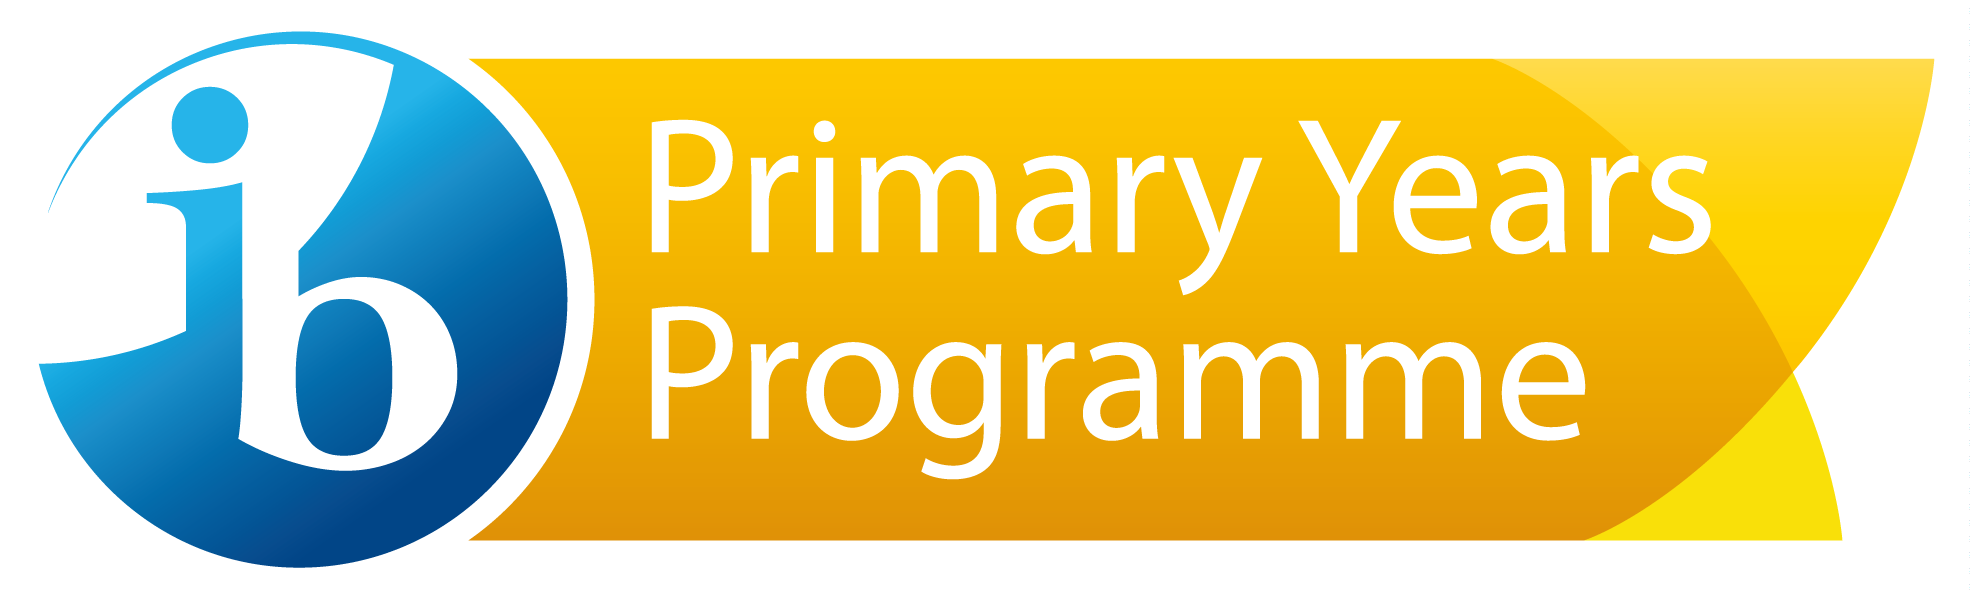 pyp-programme-logo-en